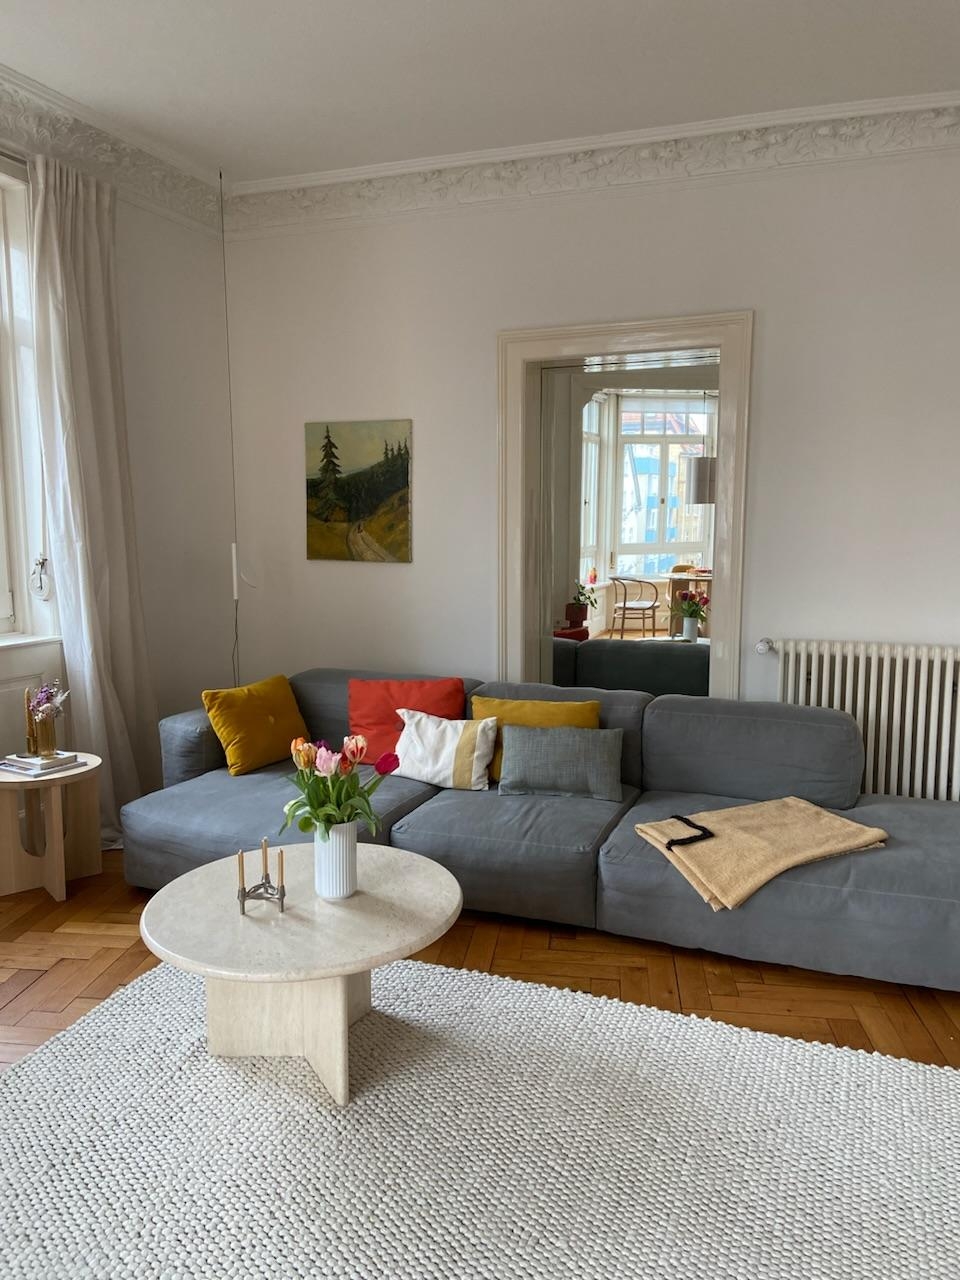 #livingroom #haydesign #altbauliebe 